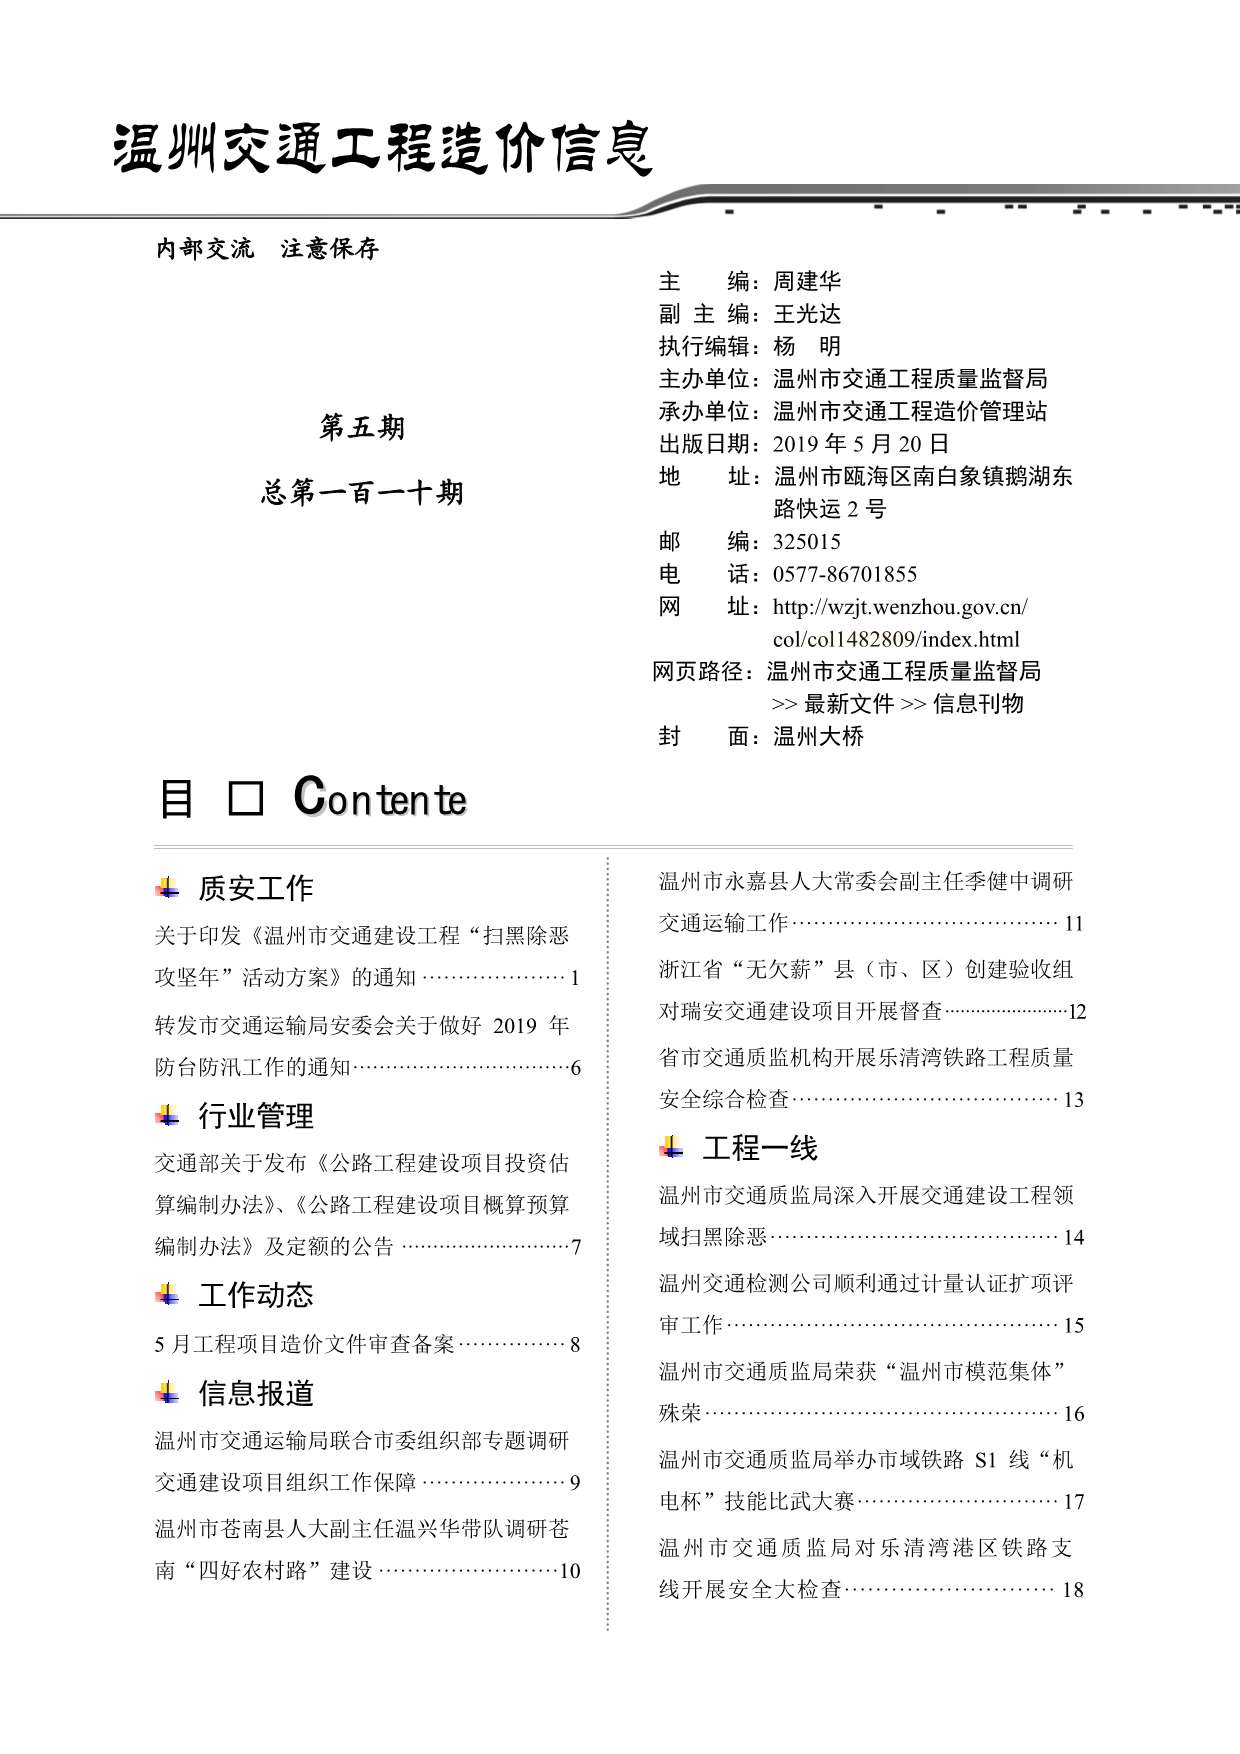 2019年5期温州交通信息价pdf扫描件